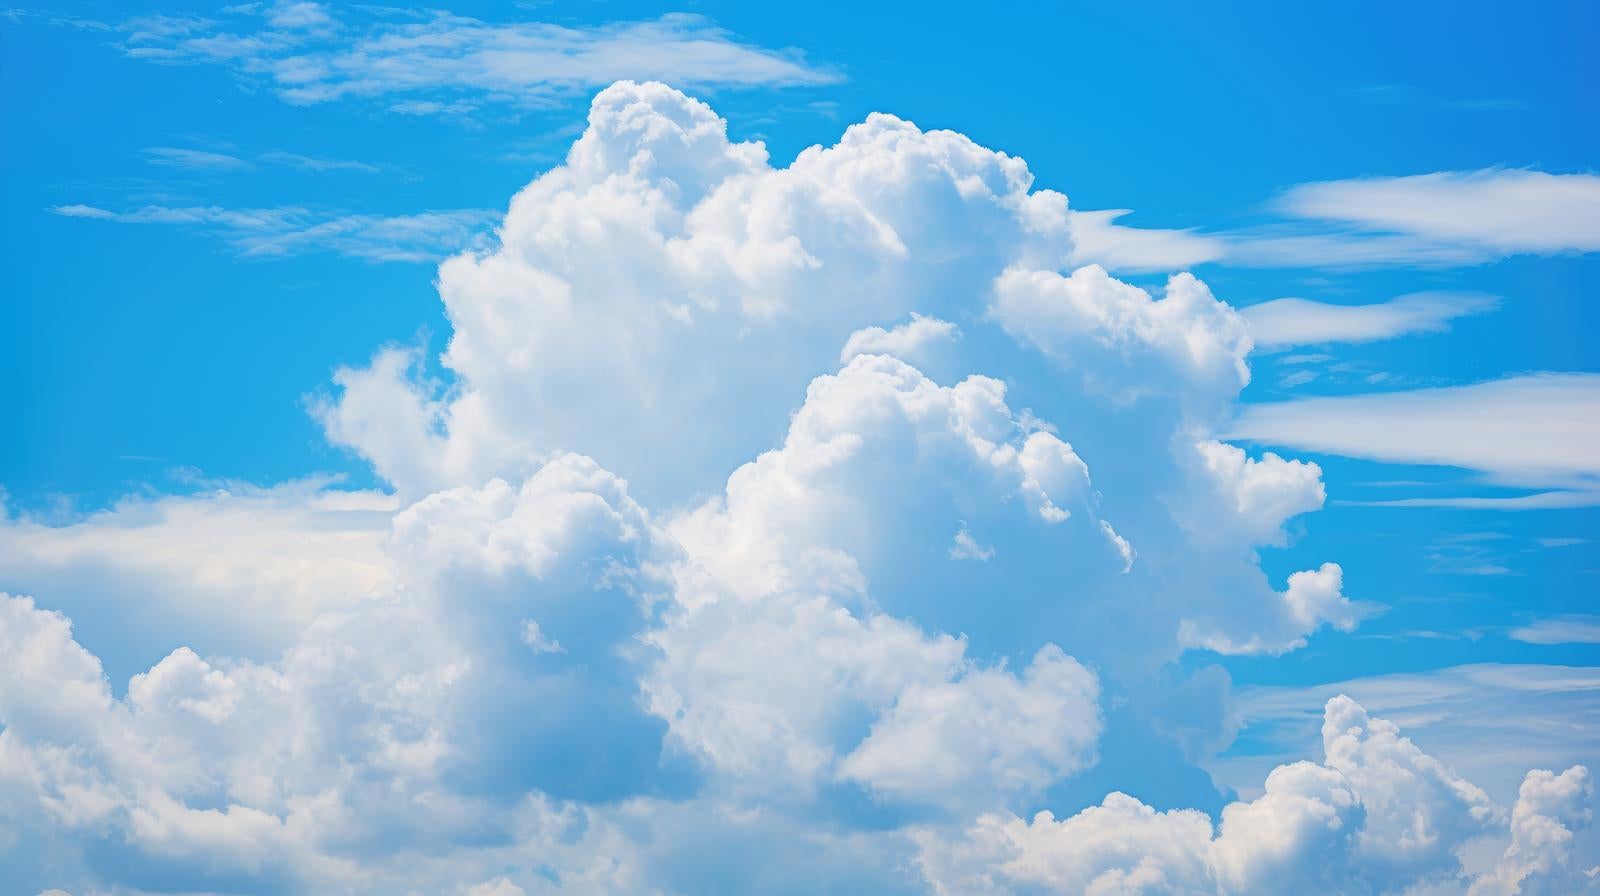 「夏日青空の積乱雲」の写真